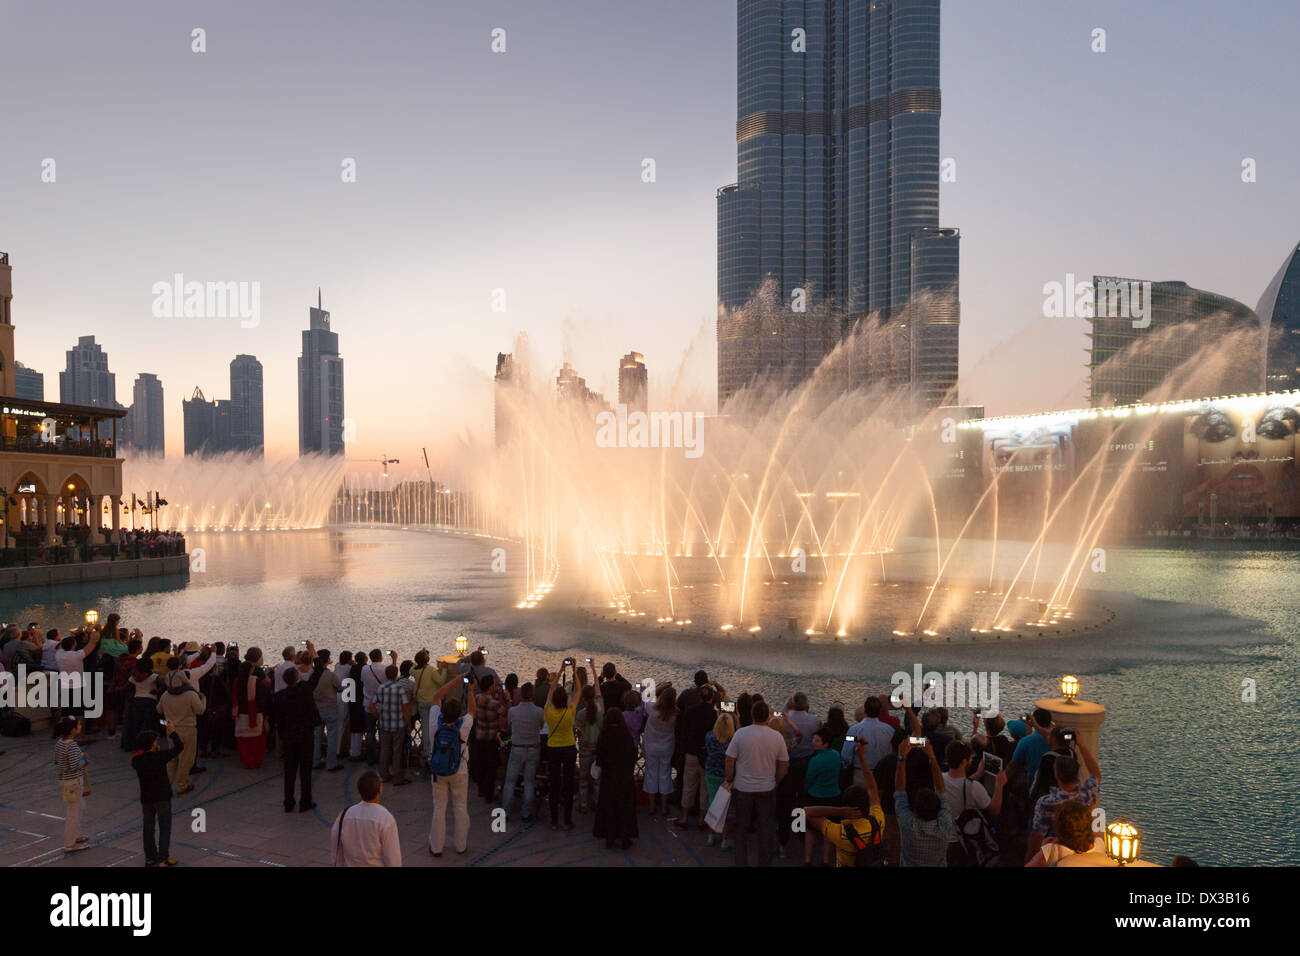 La gente ve el Dubai fuente delante del Burj Khalifa al atardecer, centro comercial Dubai, EAU, Emiratos Arabes Unidos, Oriente Medio Foto de stock